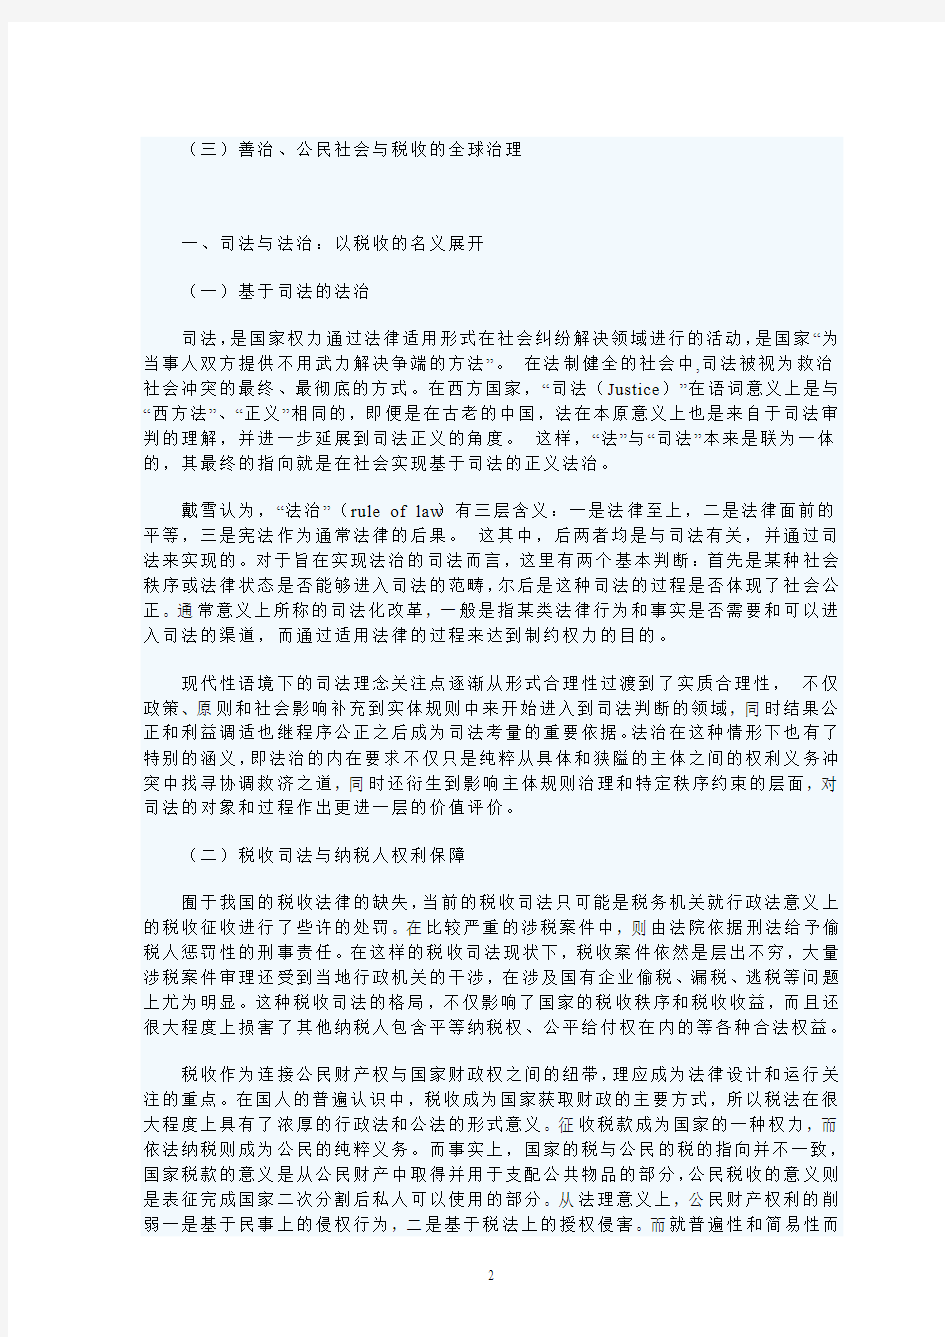 本土化语境下的中国税收司法改革